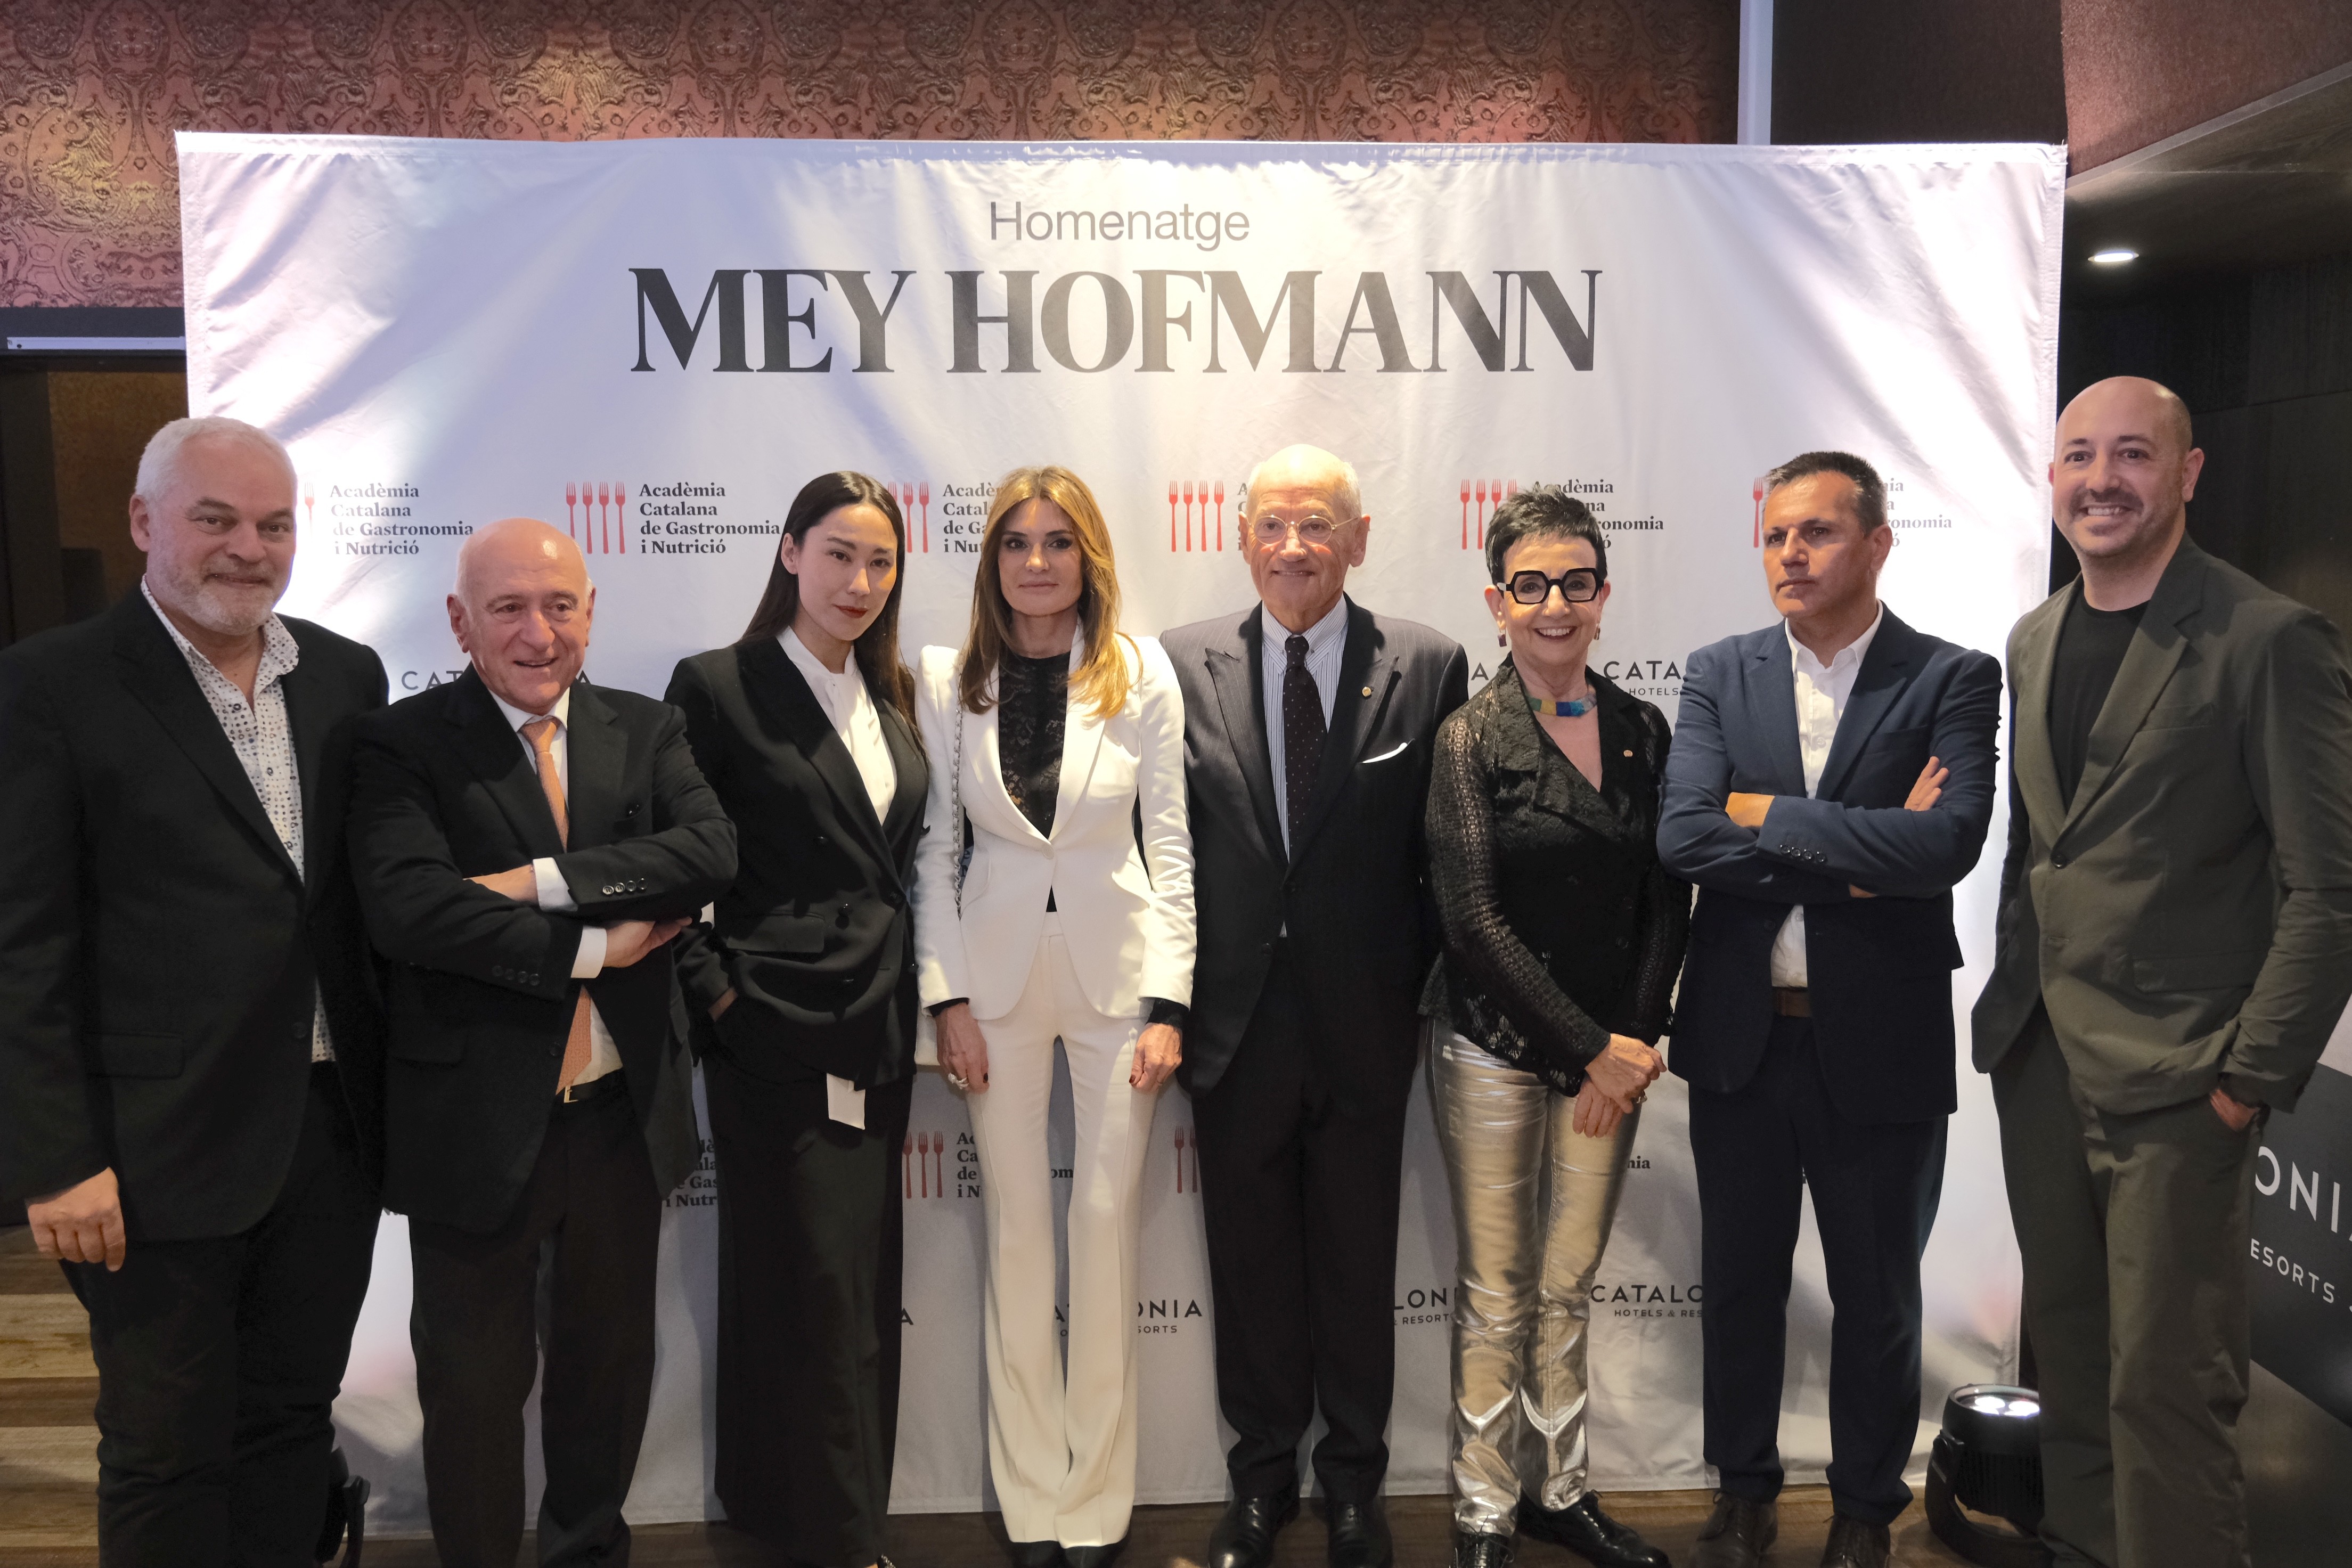 La Academia Catalana de Gastronomía y Nutrición rinde homenaje a Mey Hofmann